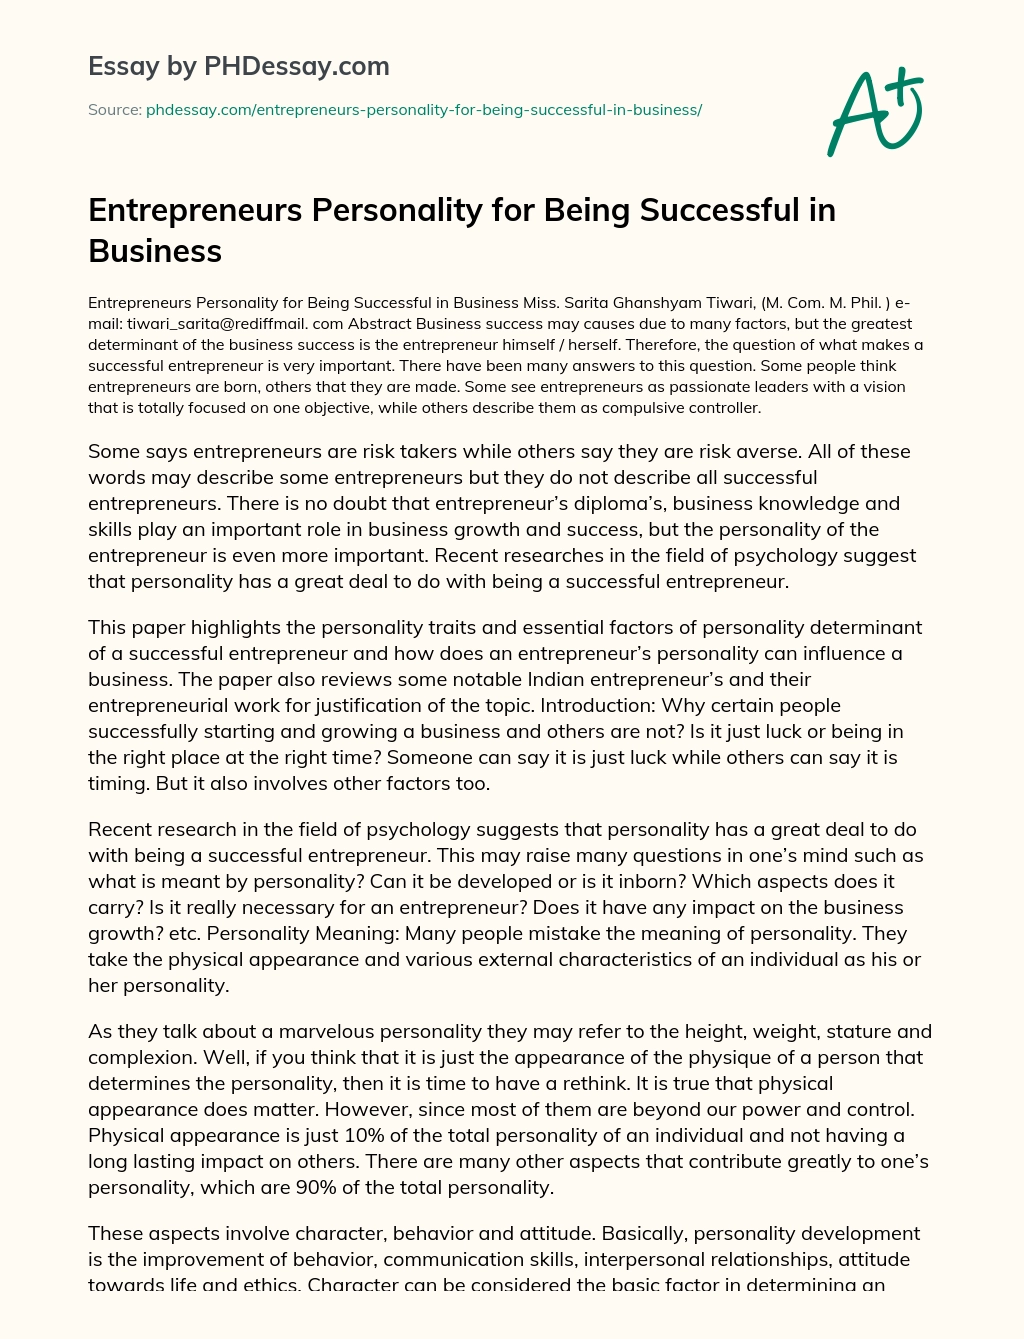 essay about successful entrepreneur